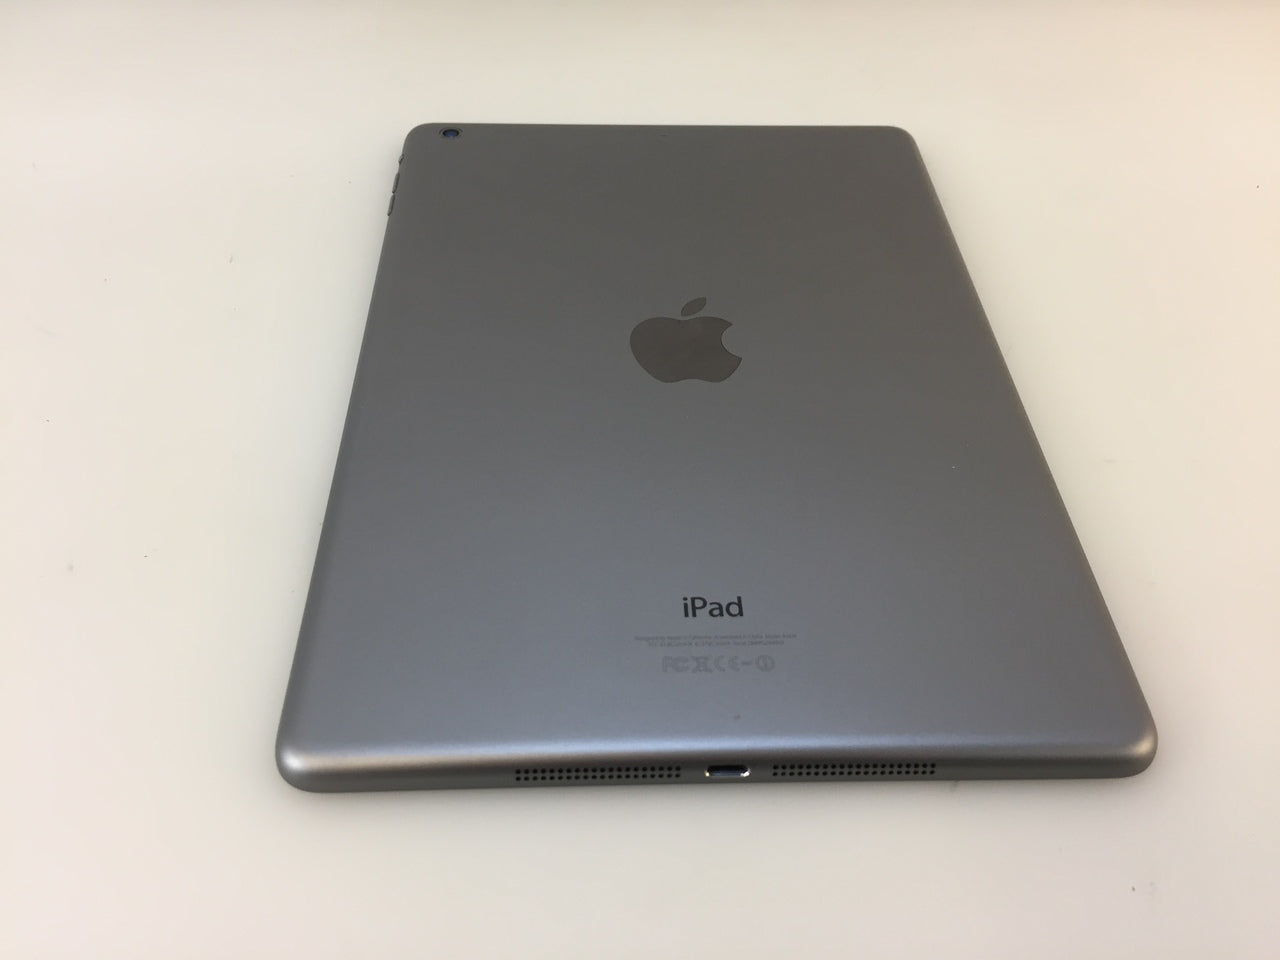 Apple iPad Air 1st Gen 32GB Wi-Fi 9.7in MD786LL/B Tablet - Space